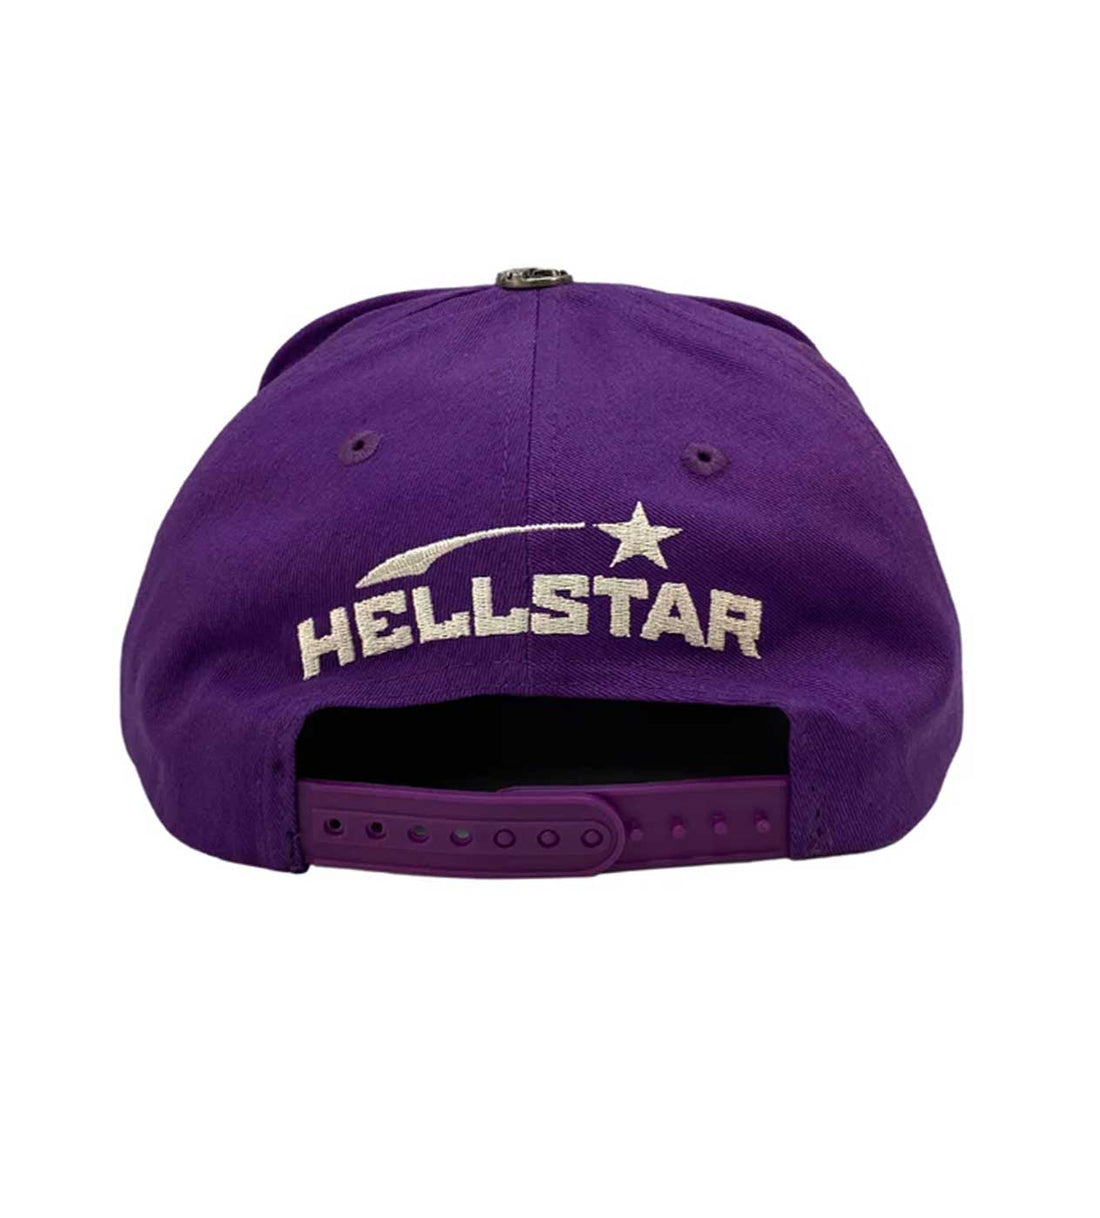 Hellstar OG Purple Snapback